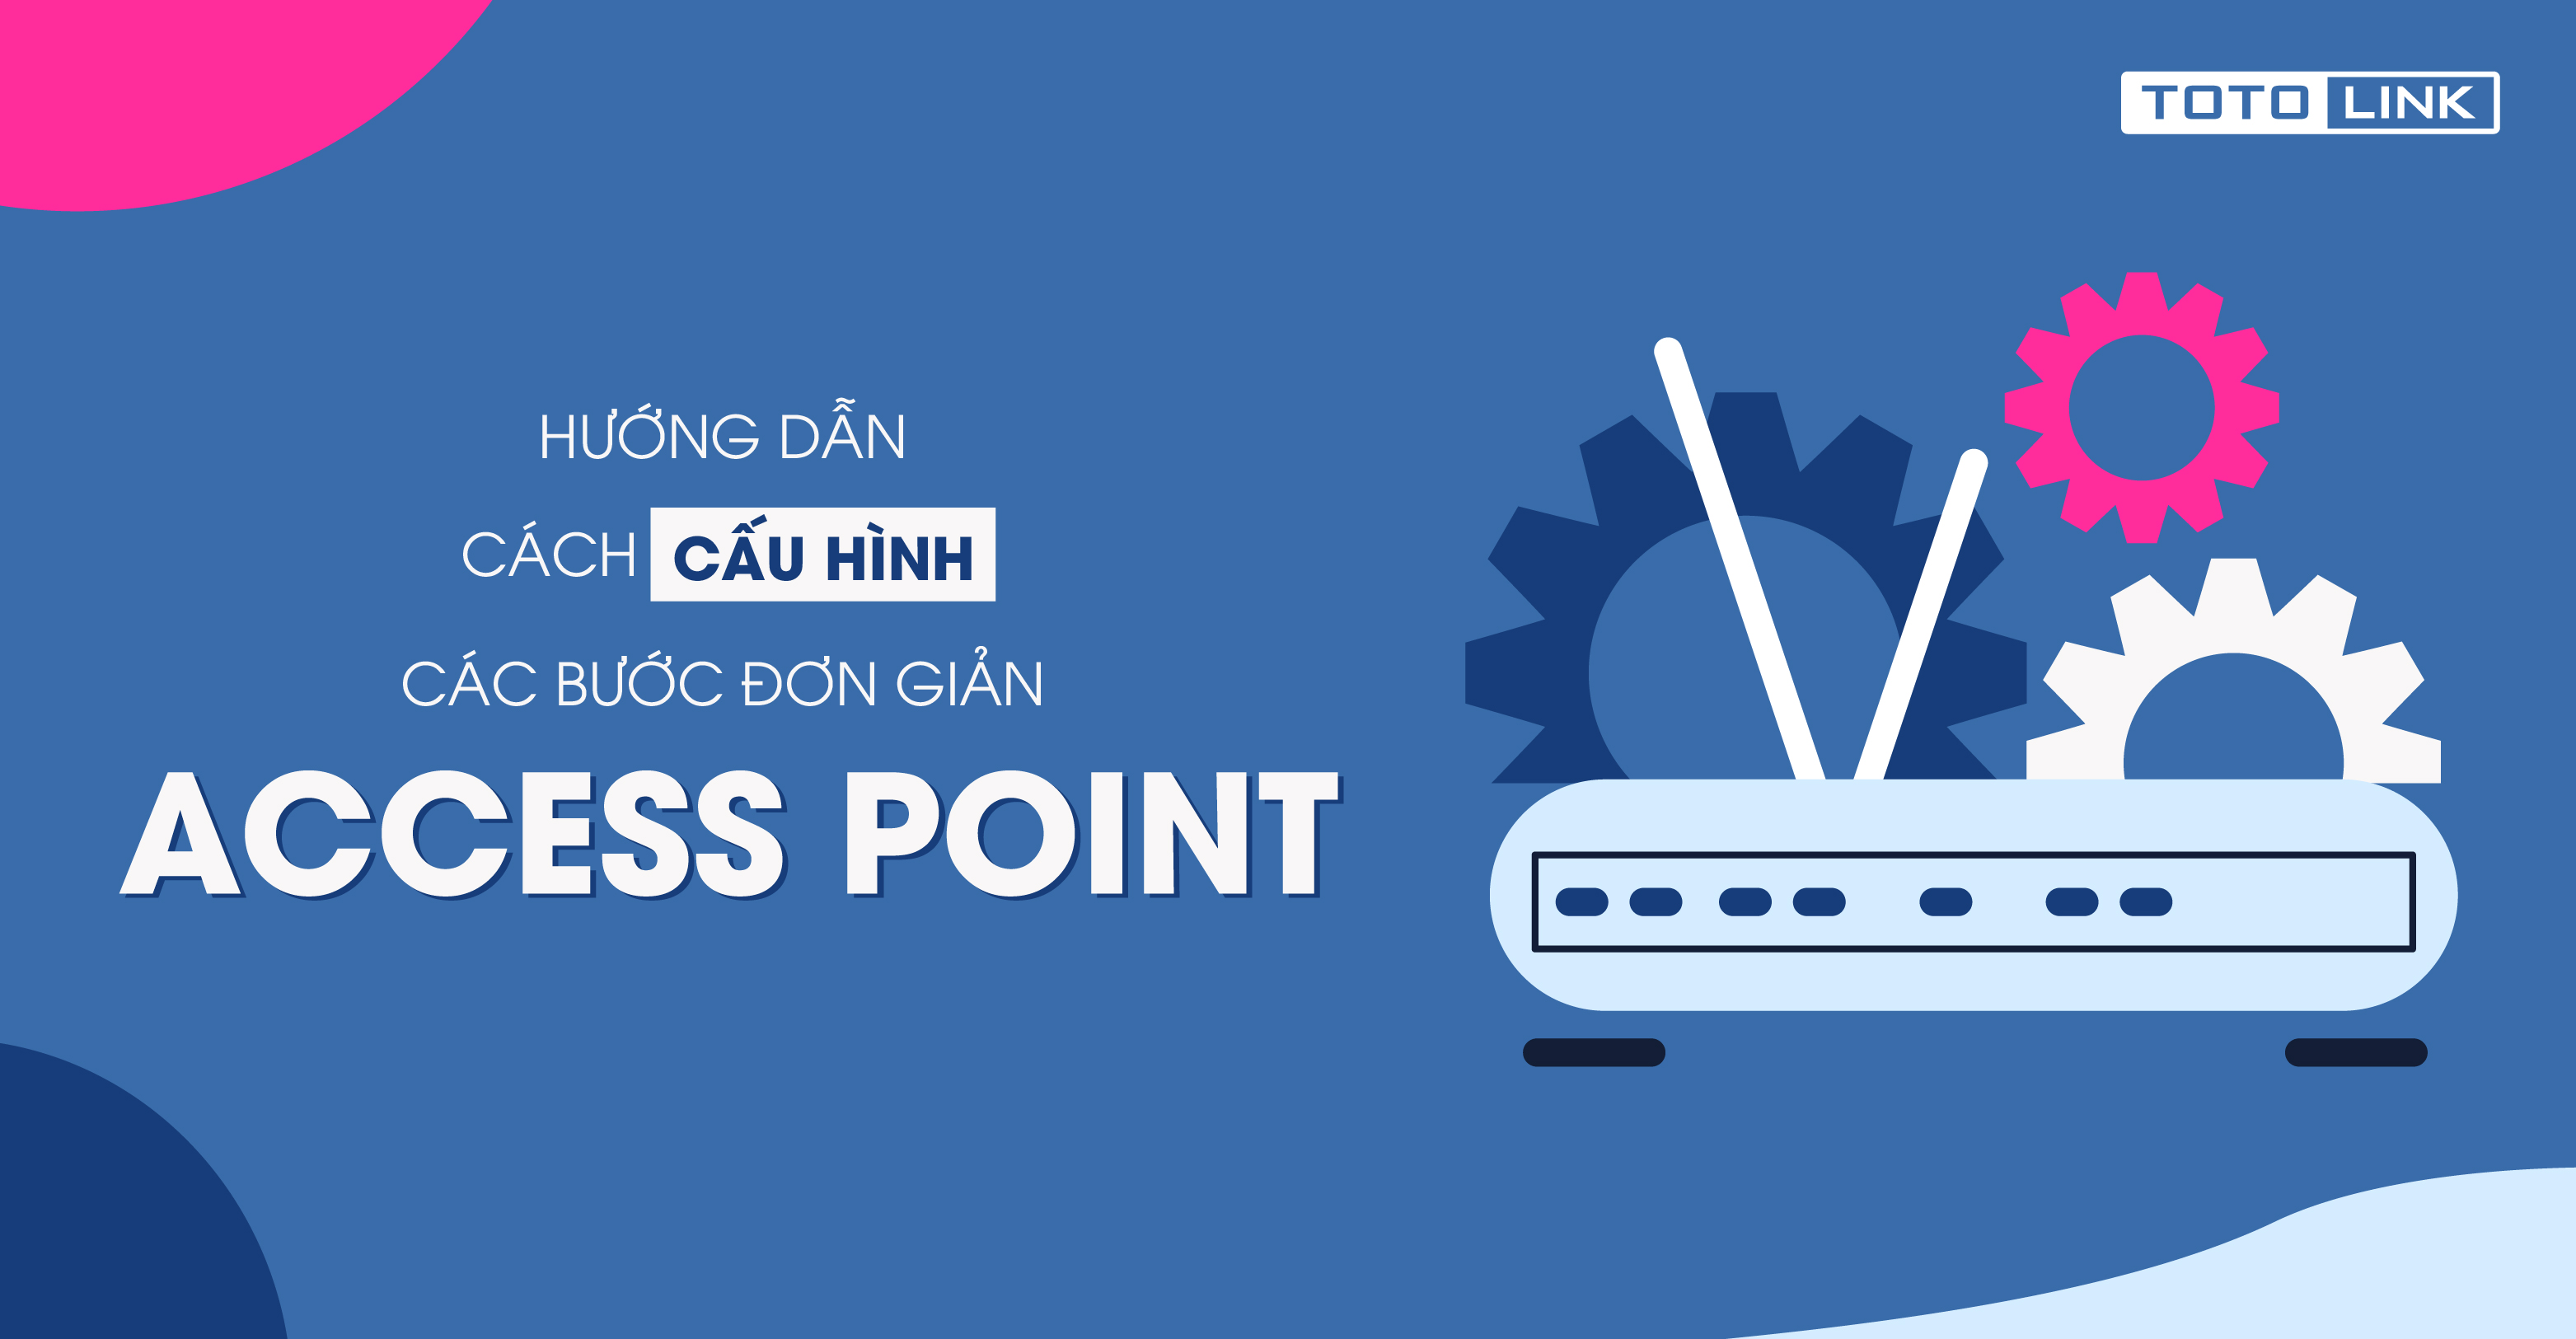 Hướng dẫn các bước cấu hình đơn giản cho access point - TOTOLINK Việt Nam